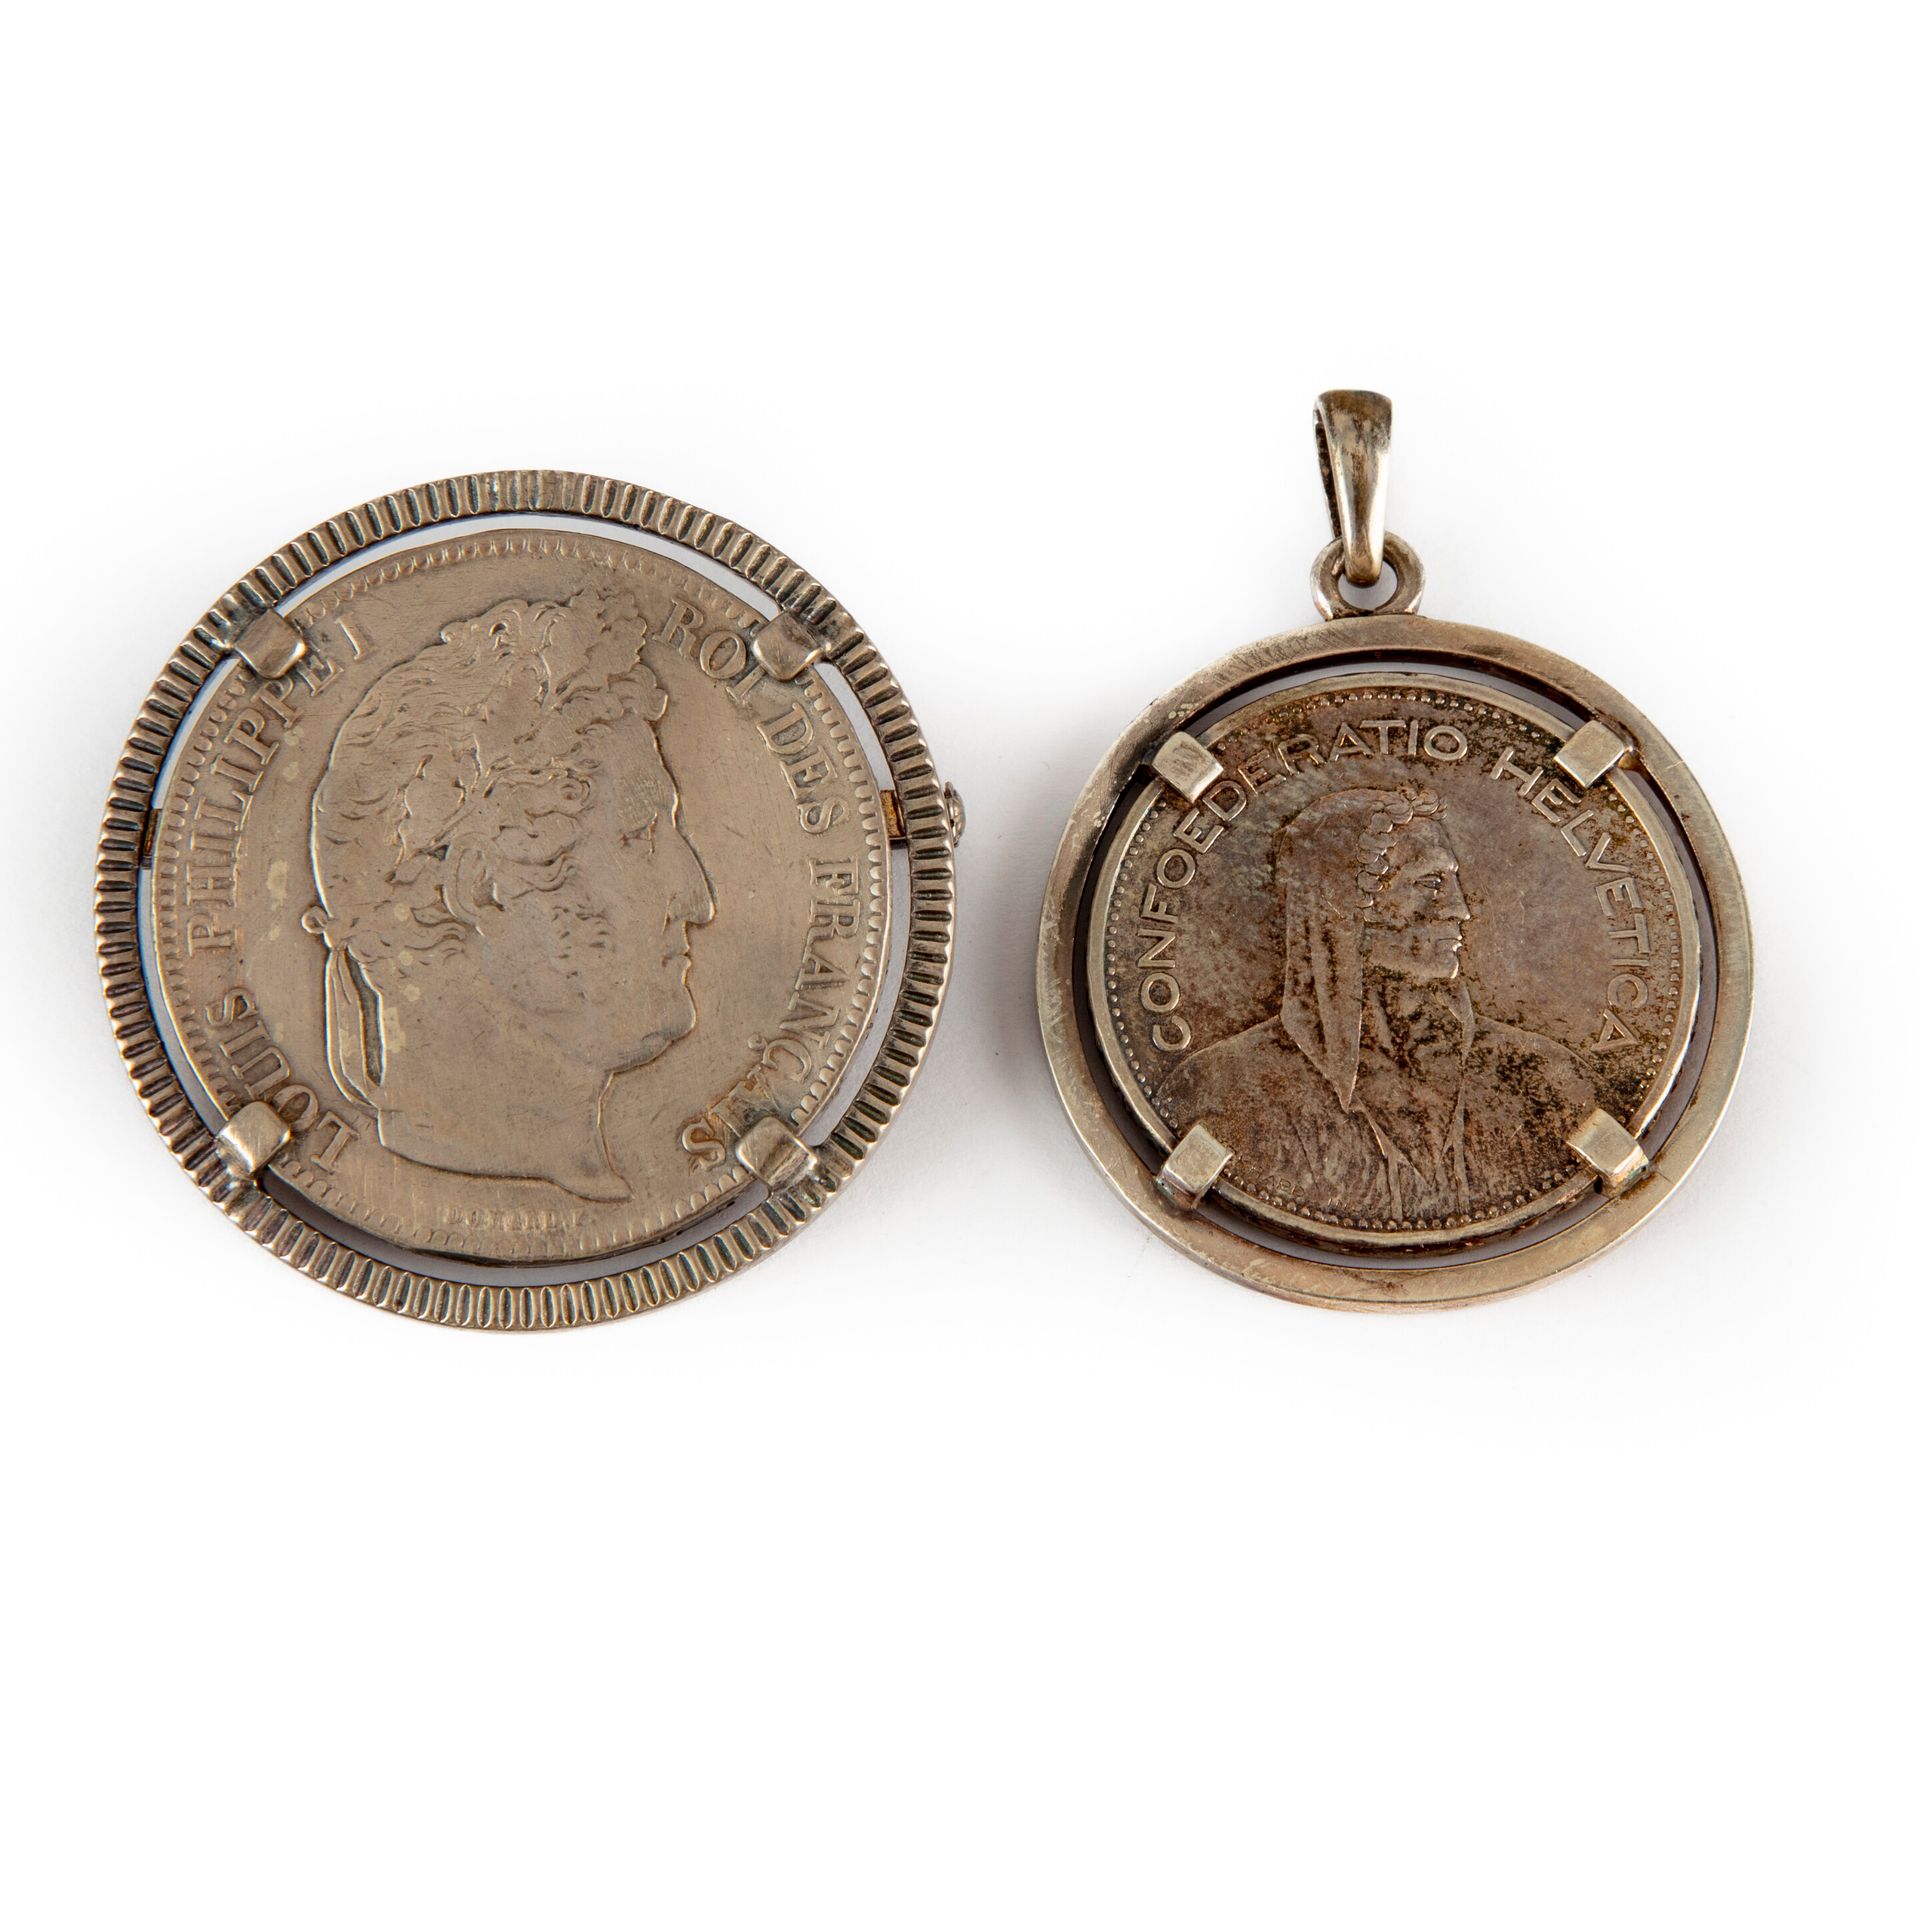 Null 套装包括一枚镶嵌在胸针上的5法郎路易-菲利普1842 B硬币和一枚镶嵌在吊坠上的5法郎瑞士1932 B硬币。 
重量：53.9克